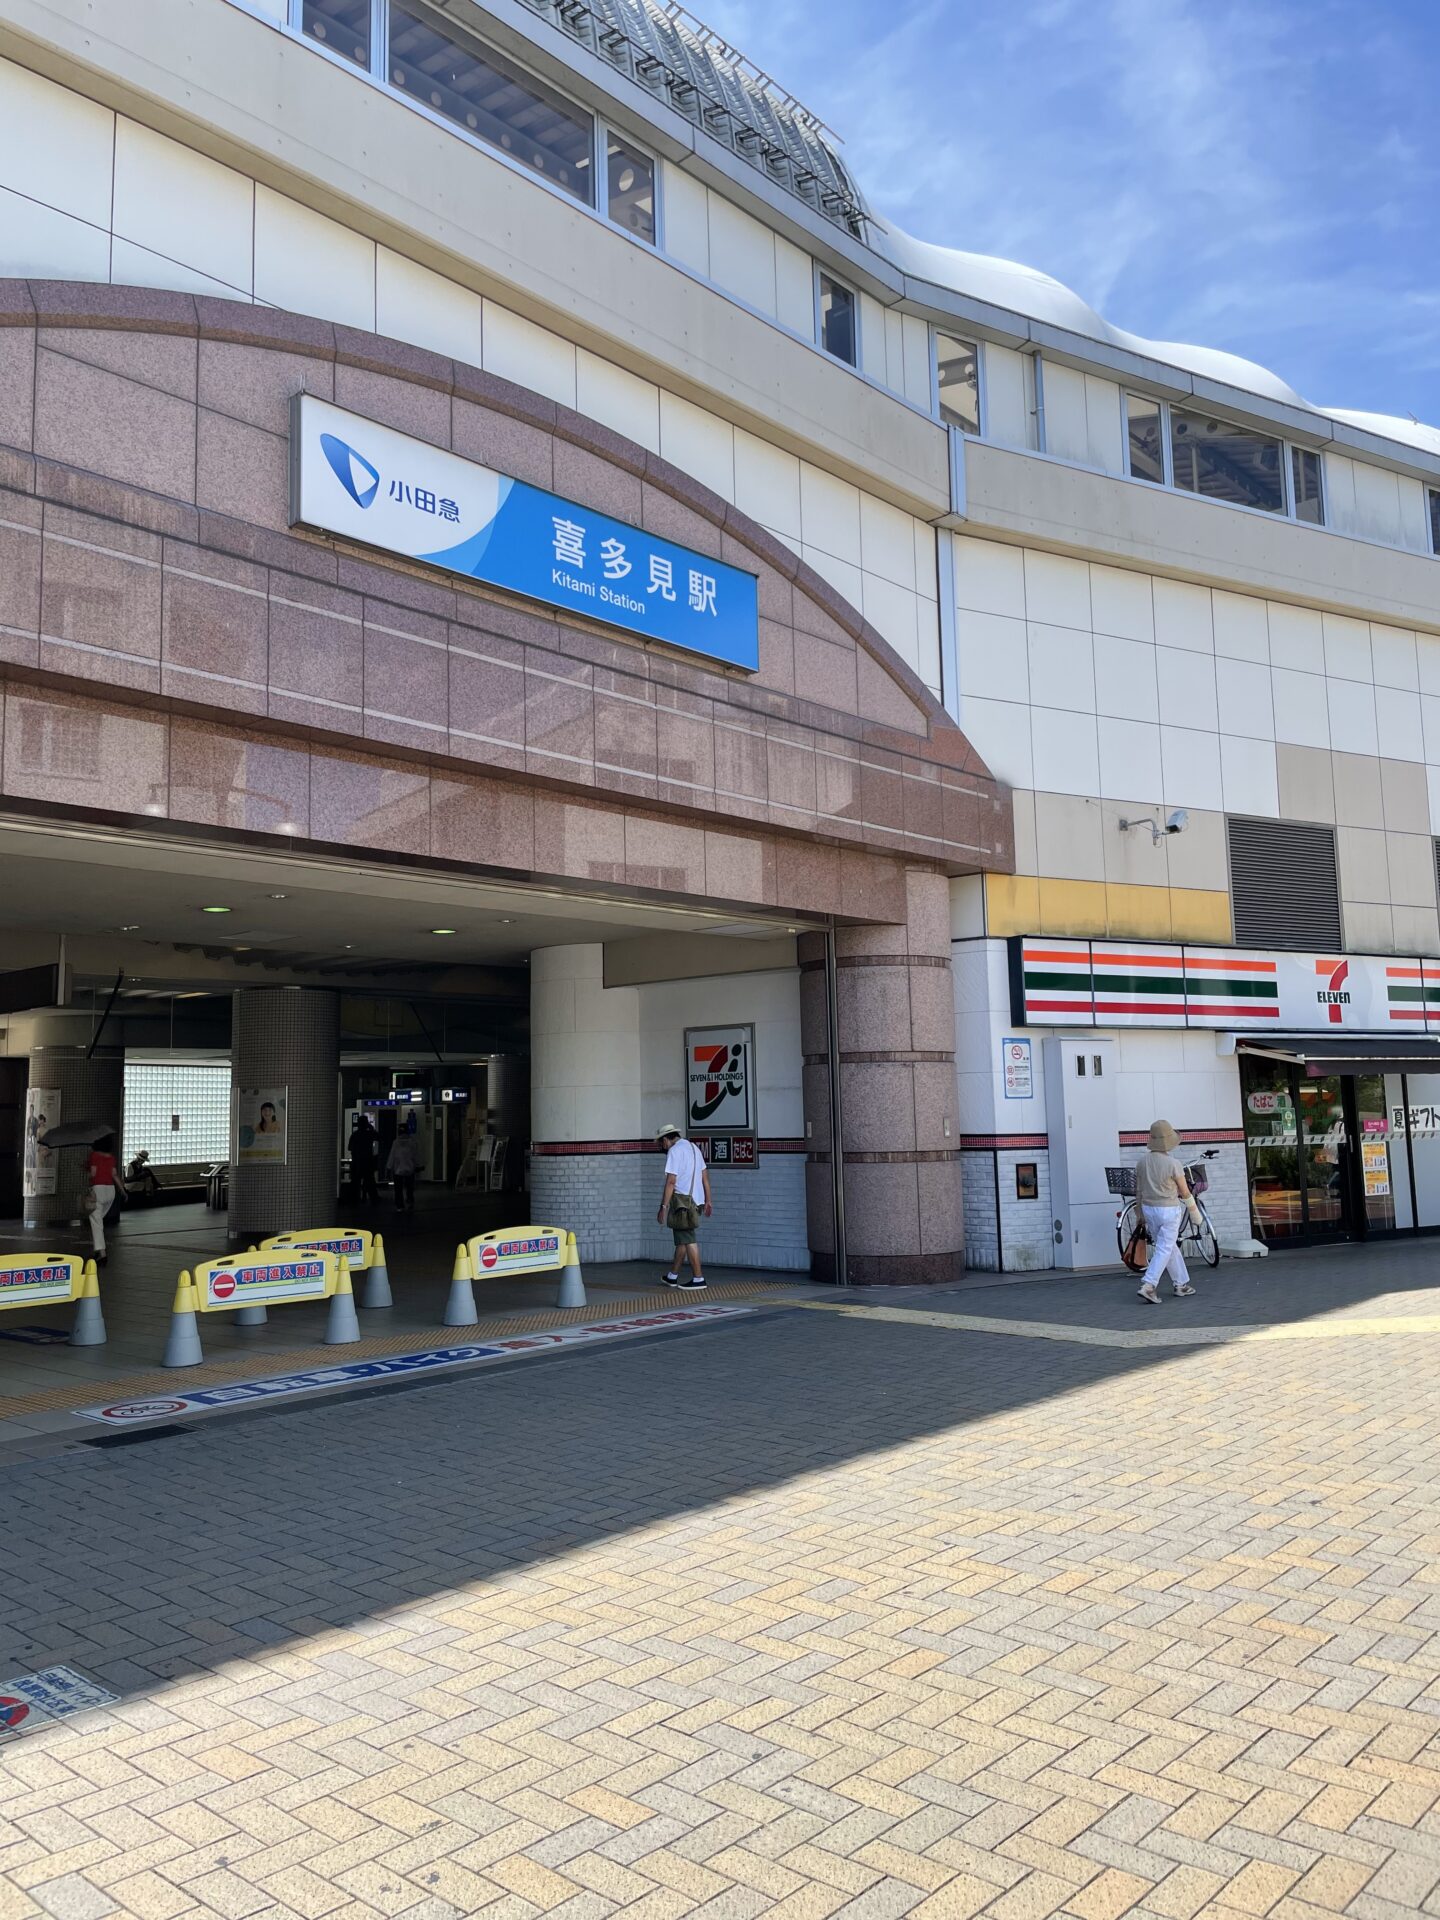 小田急線「喜多見駅北口」をでます。